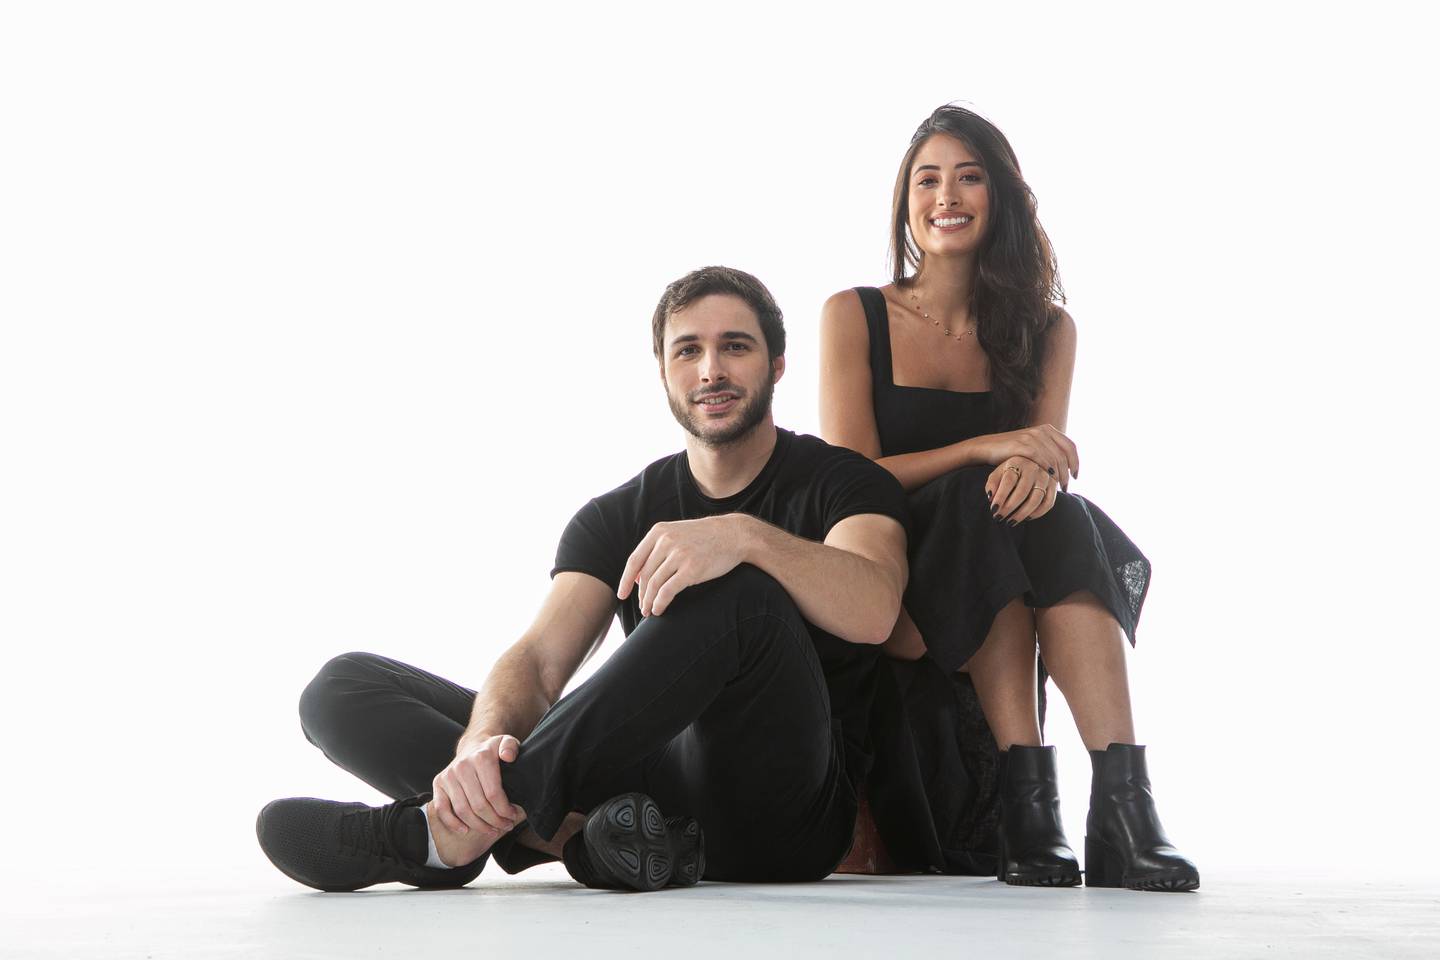 Fabio Rodas and Bruna Vaz, co-founders of Shopper